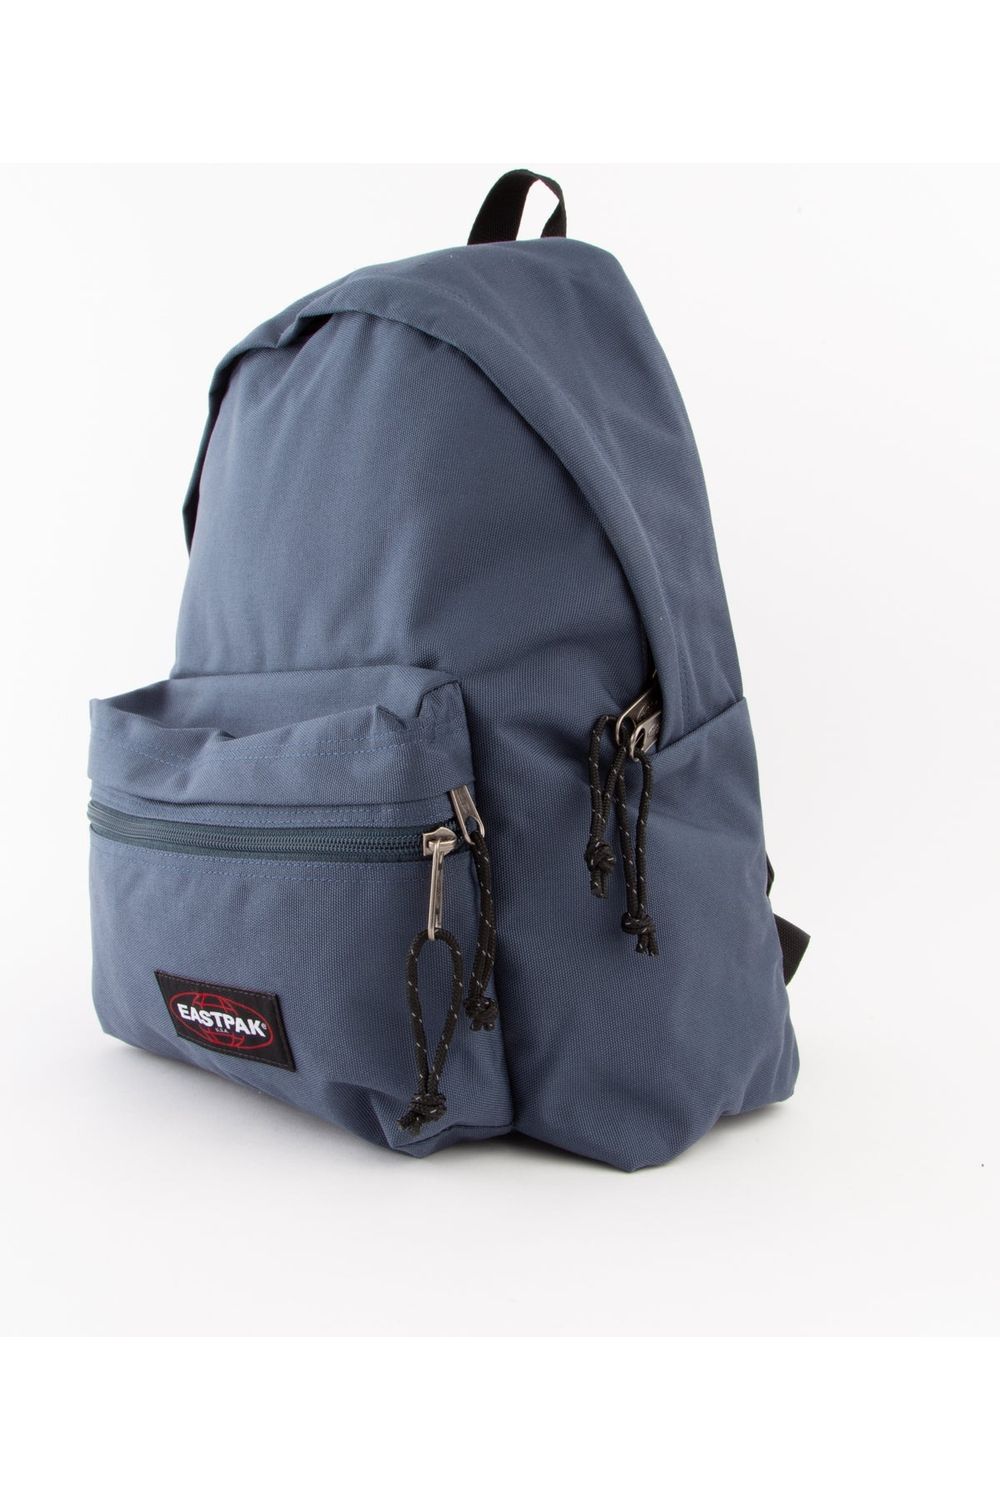 Eastpak Padded Zippl'r+ Backpack